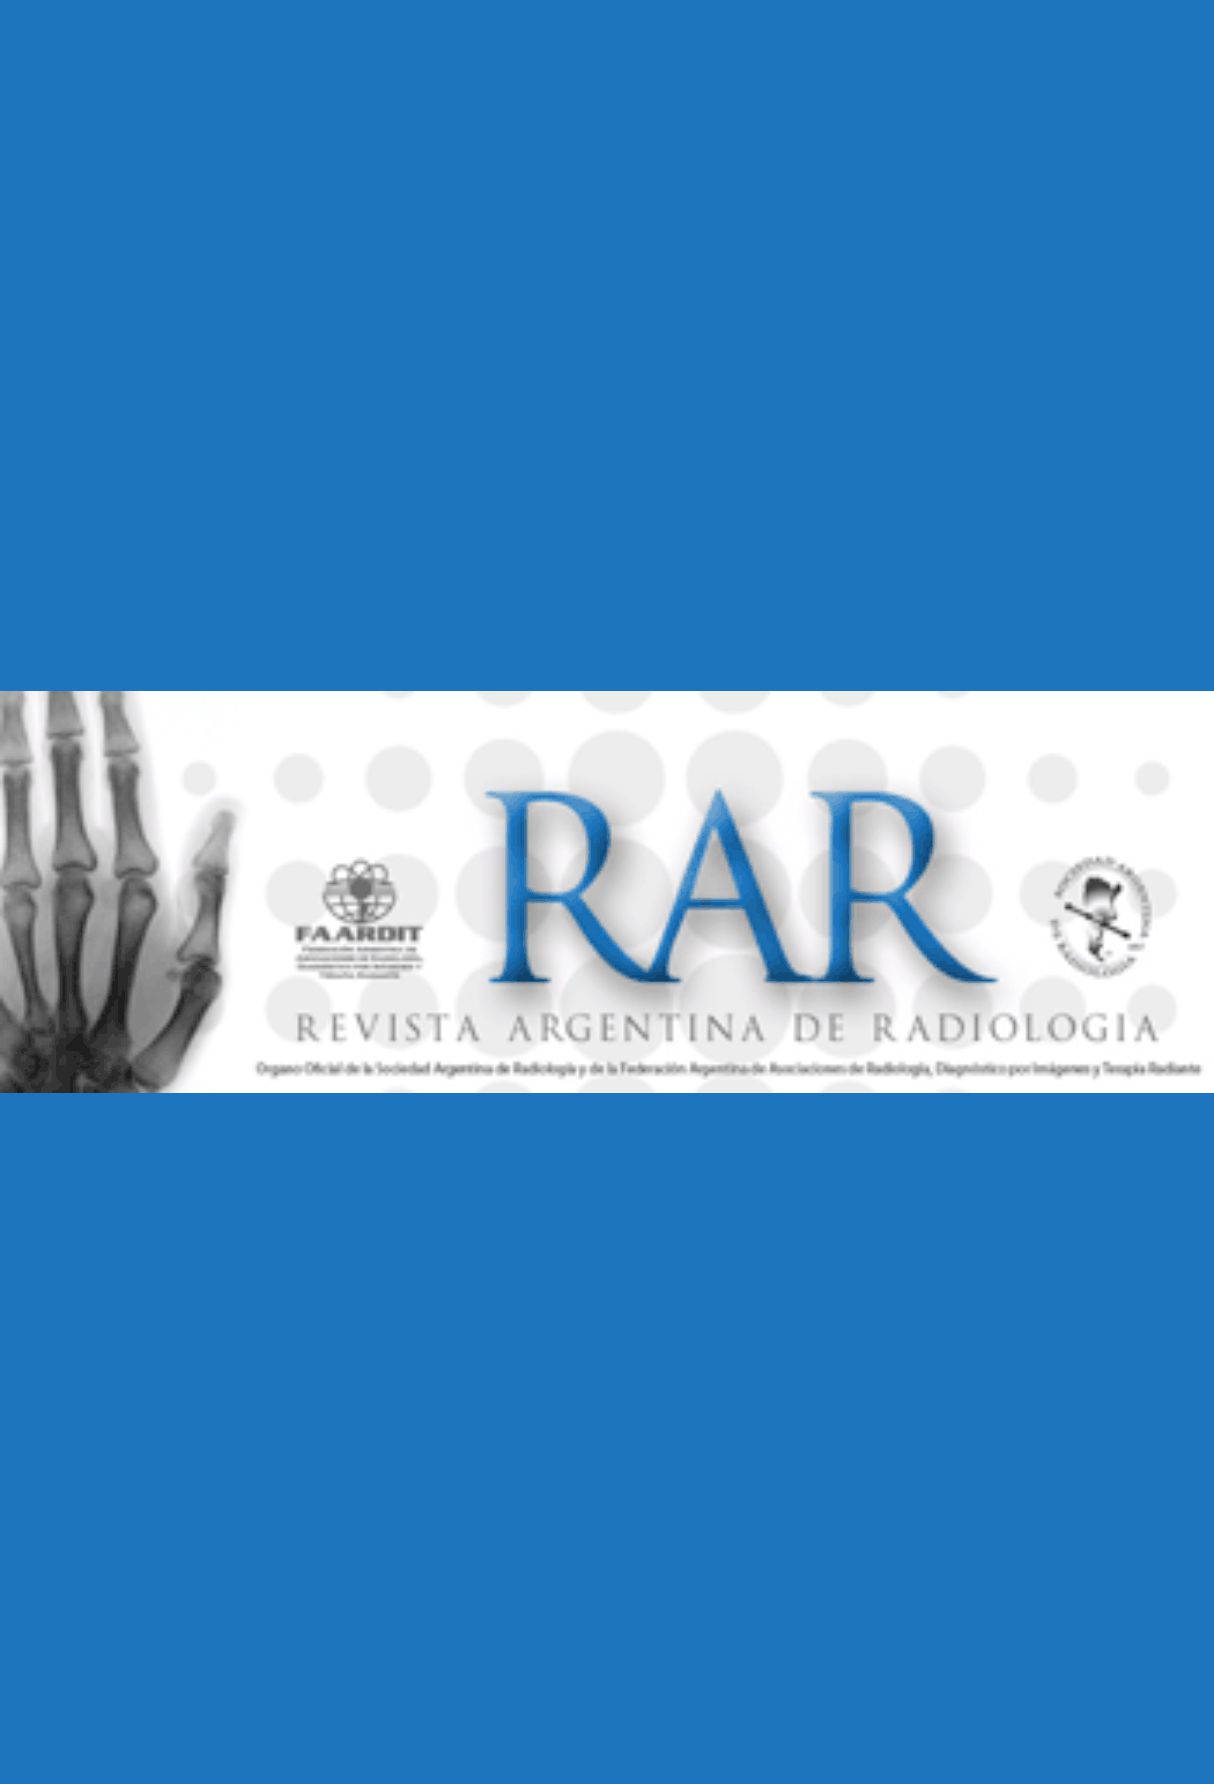 Capa: Revista Argentina de Radiologia